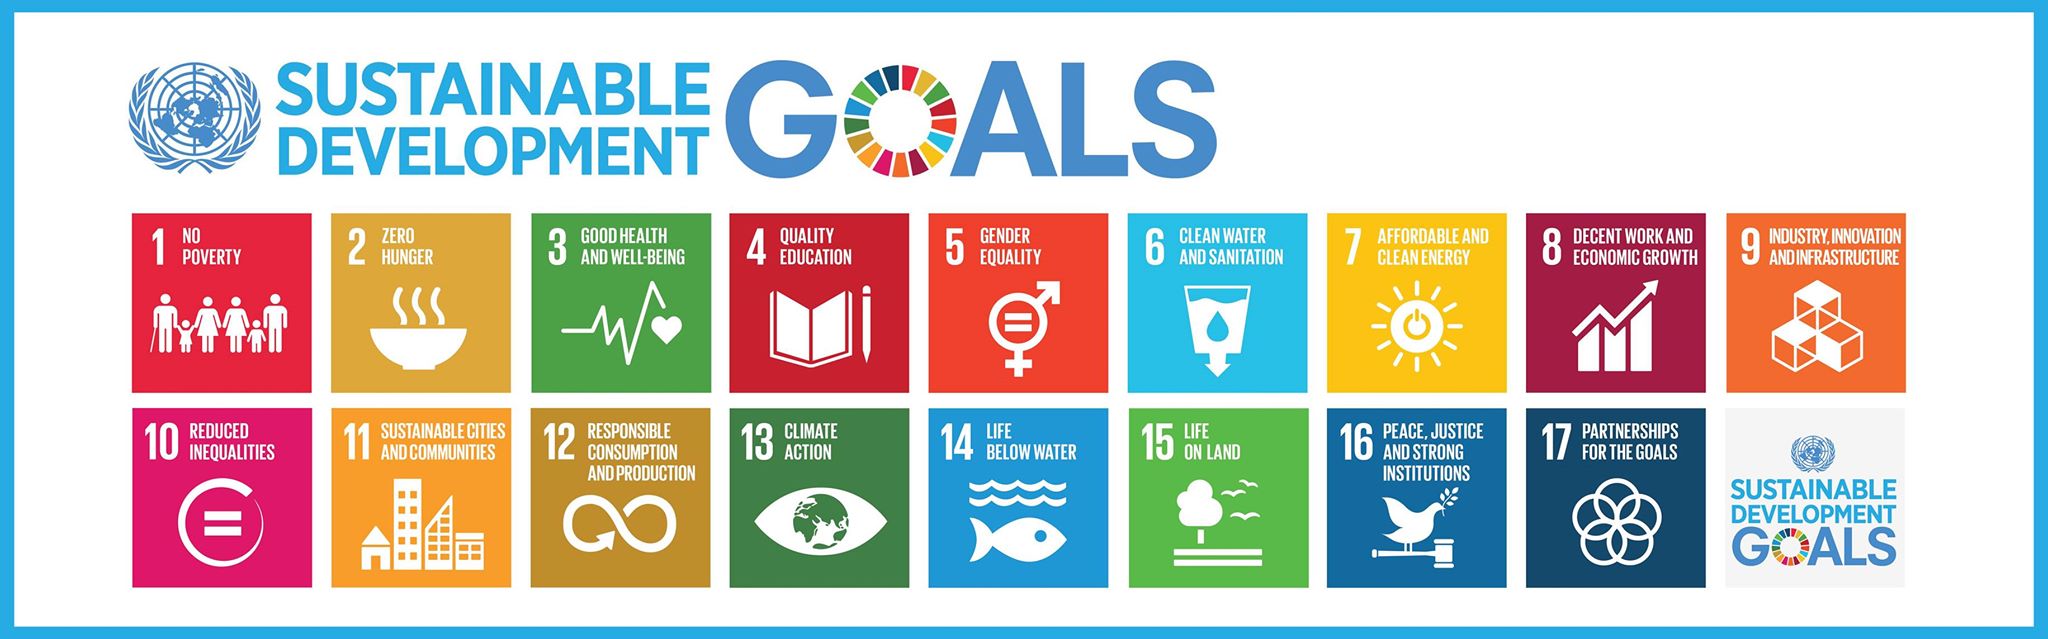 【WorldShift Osaka】ゲーム「2030 SDGs」体験で学ぶ17の持続可能な開発目標と達成への道筋